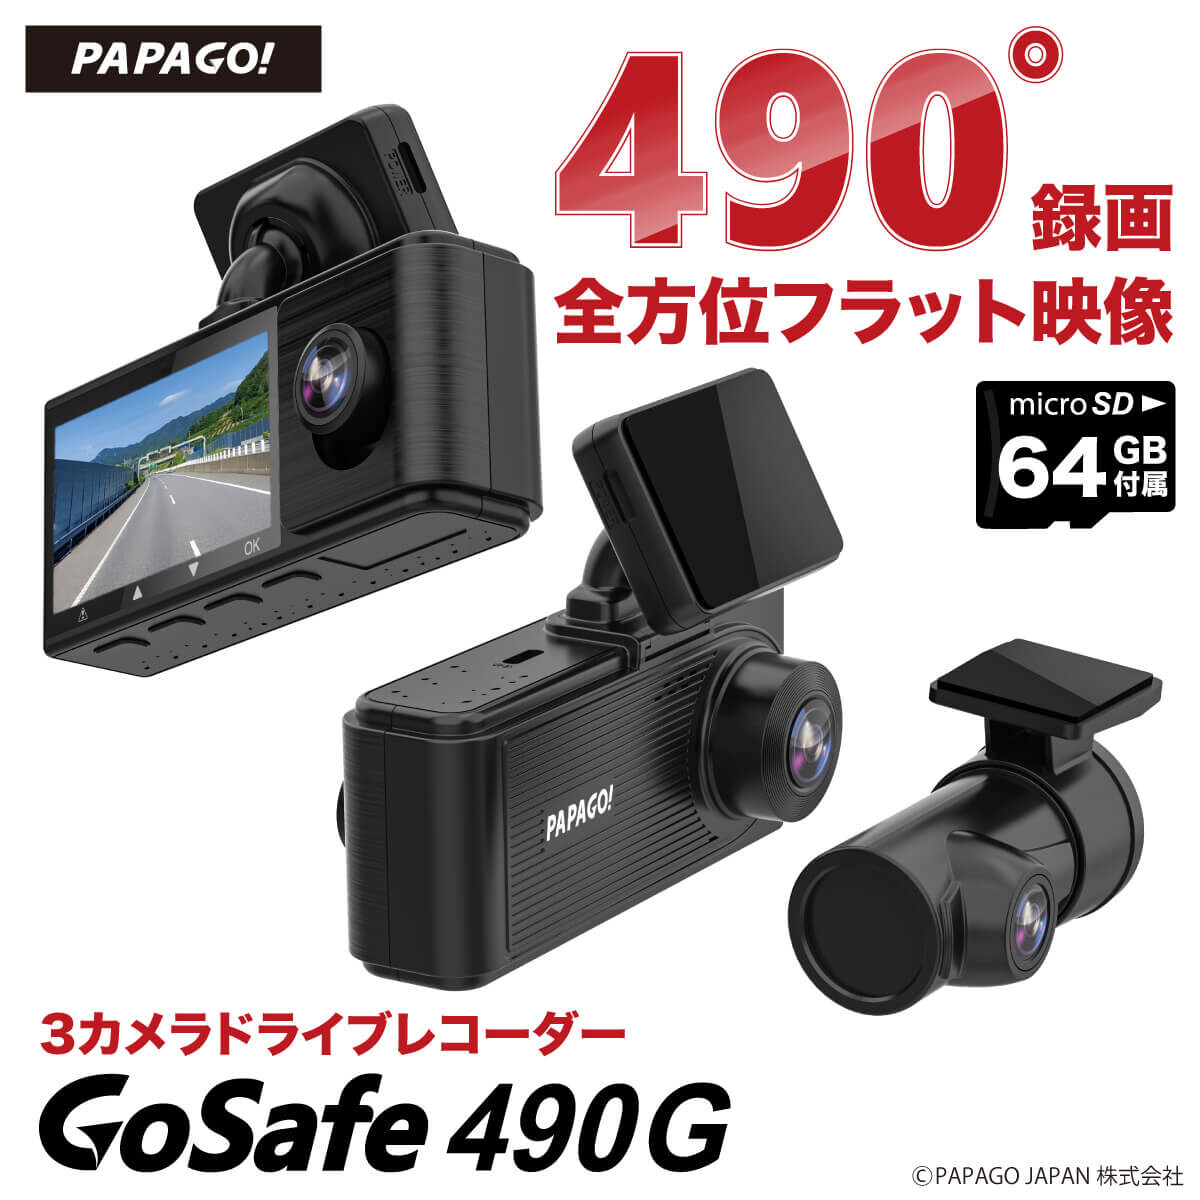 【送料無料(一部地域除く)!!】PAPAGO!3カメラ ドライブレコーダー GoSafe 490G GS490G-64GB(ドライブレコーダー・ドラレコ・高画質・GPS搭載・赤外線・液晶モニター・フロント・リア)